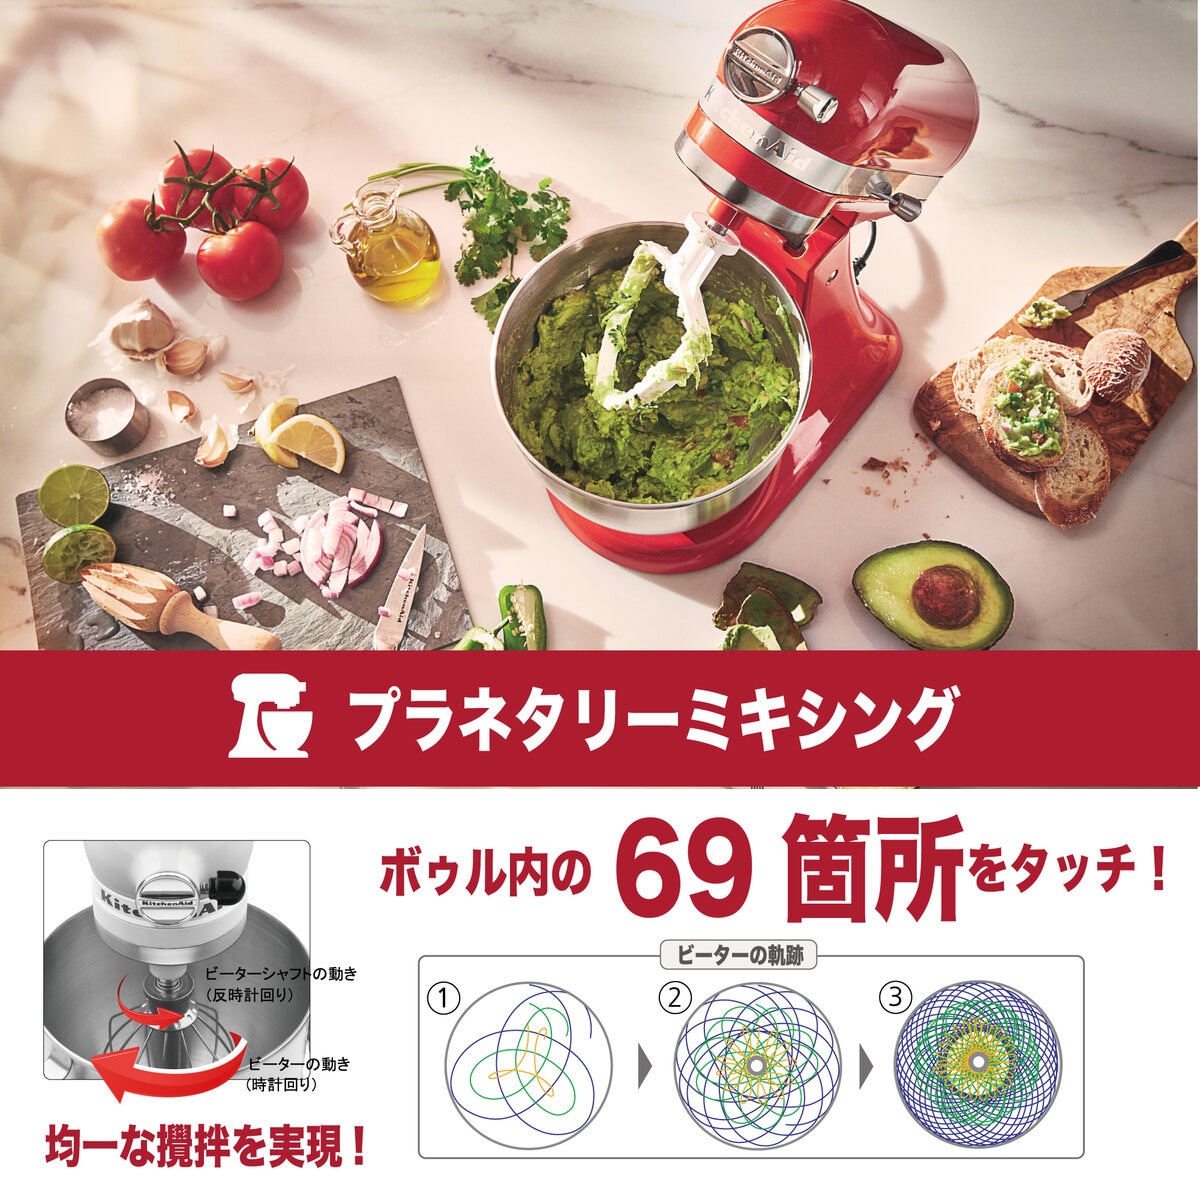 キッチンエイド アルチザン ミニ スタンドミキサー 3.3L パッションレッド Costco Japan